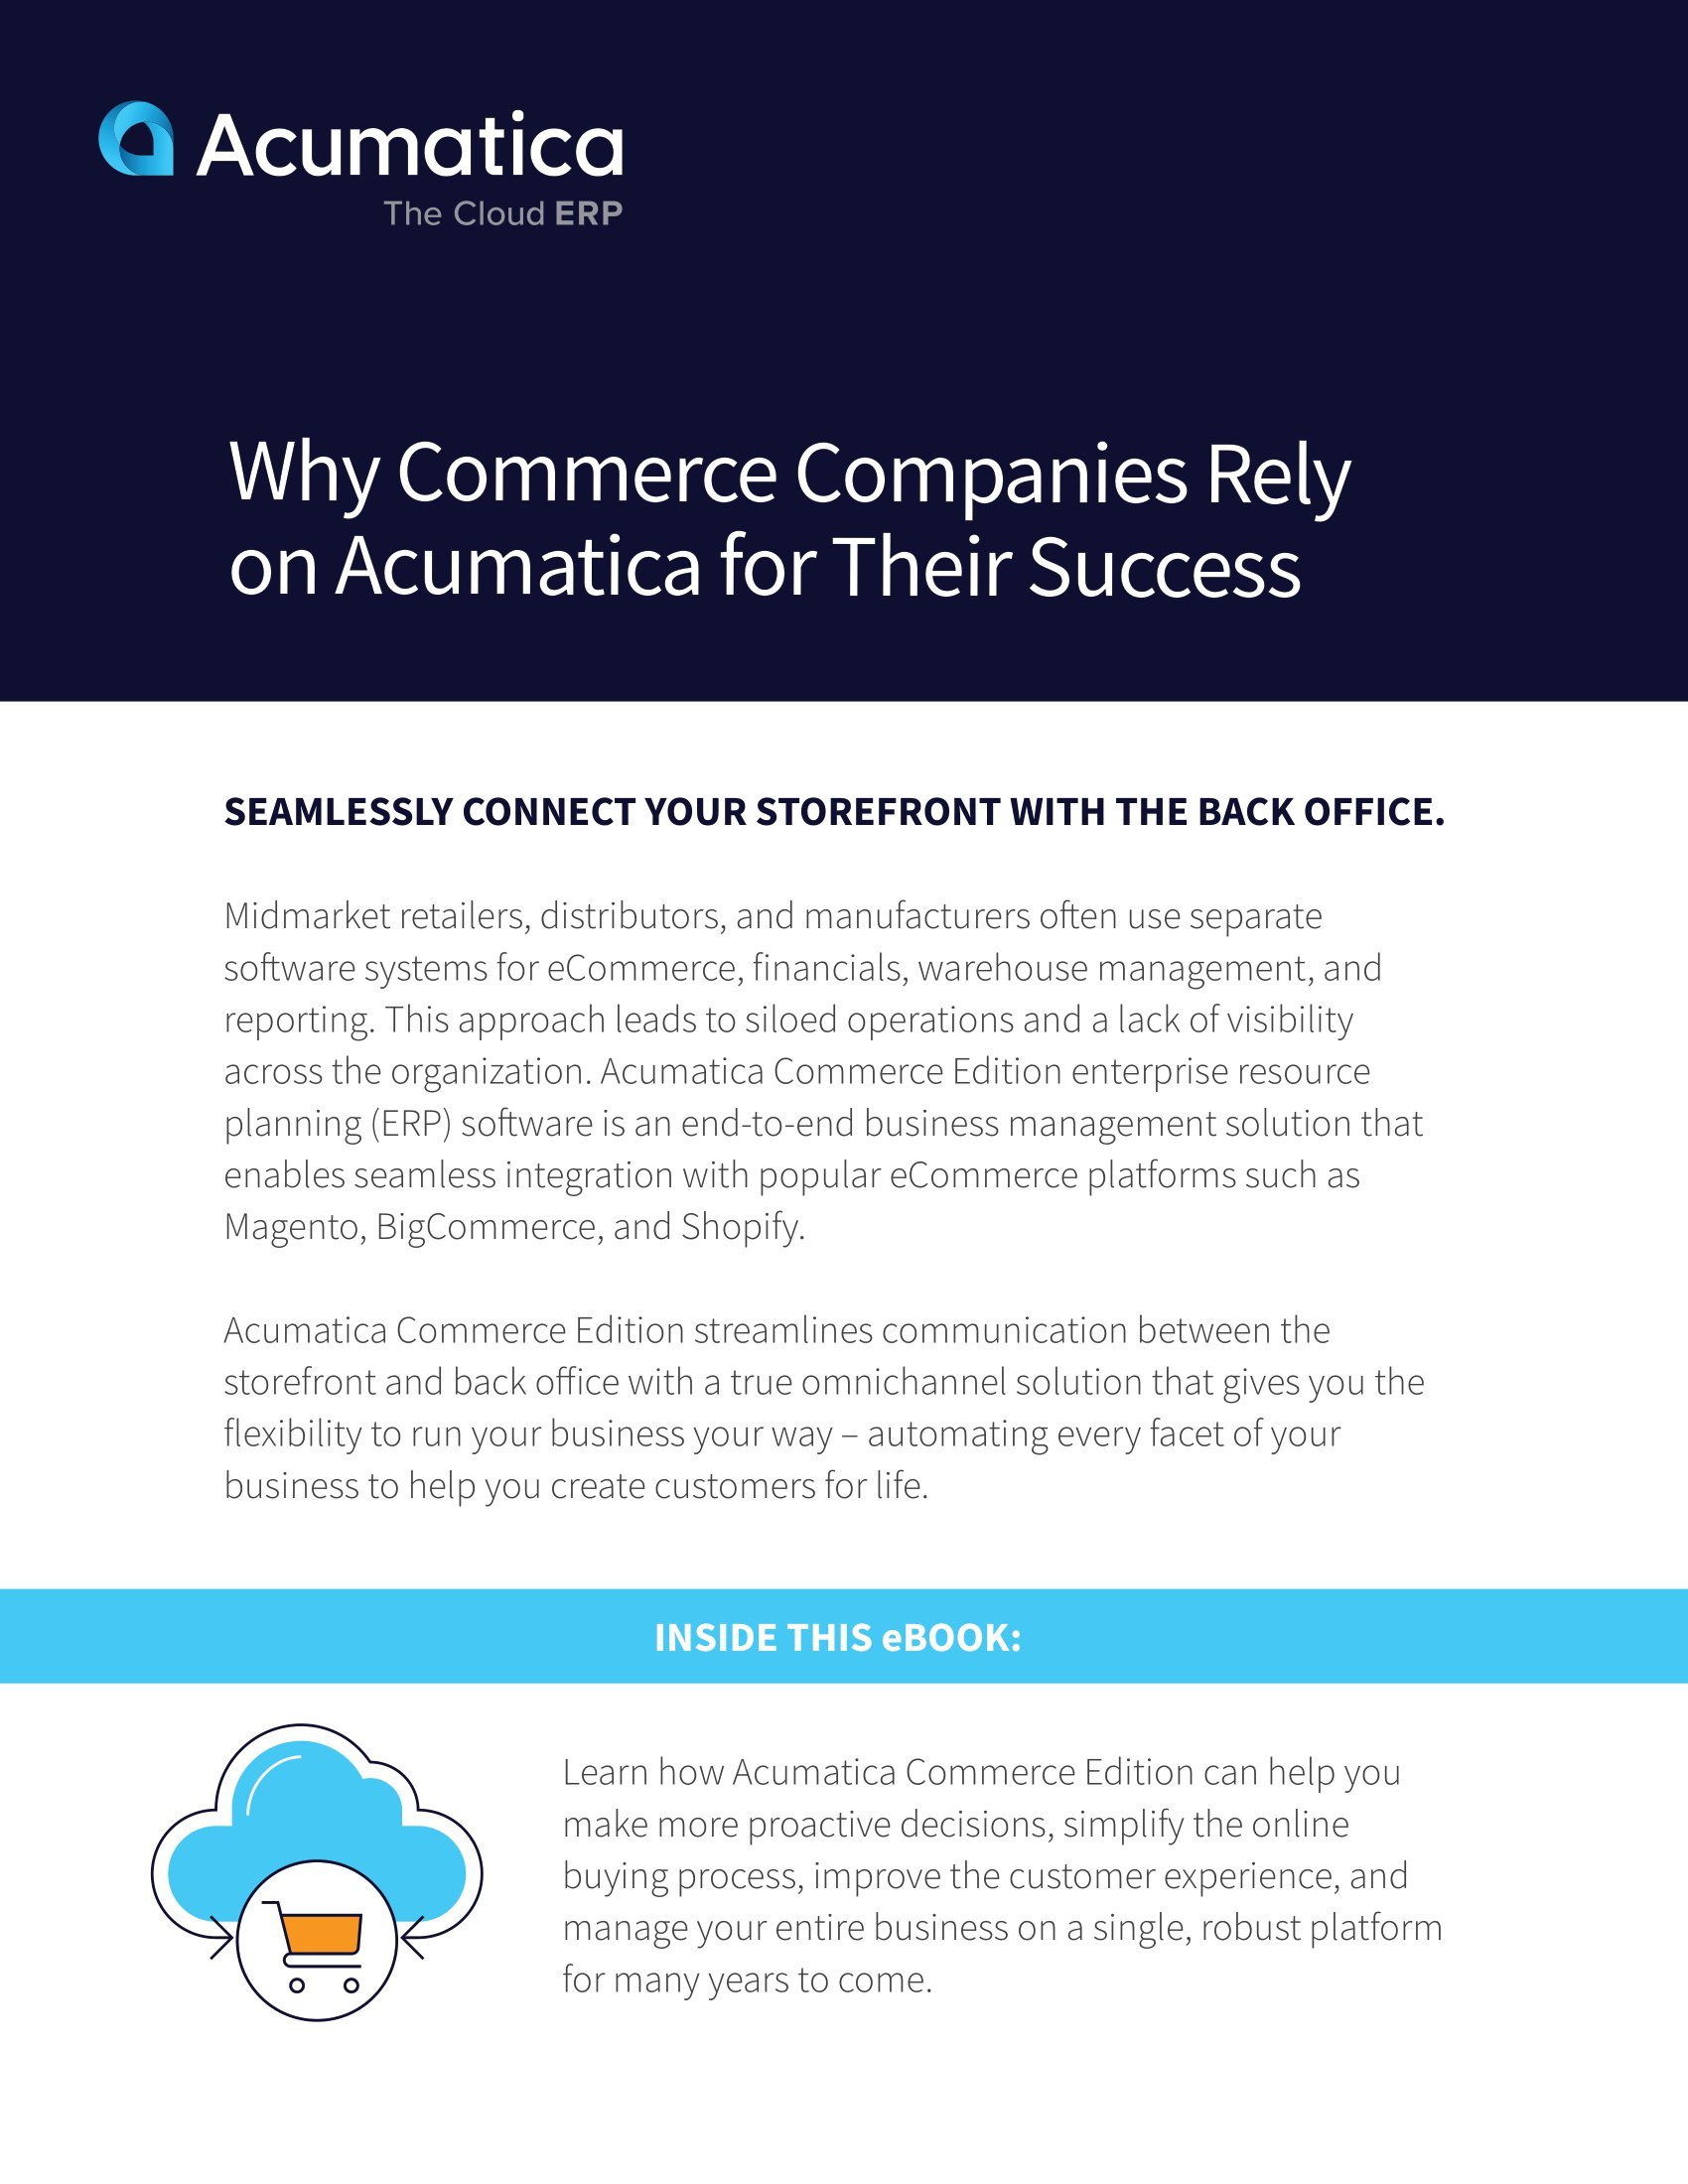 ¿Cómo puede la plataforma de comercio electrónico de Acumatica ayudar a su negocio en línea a crecer? 